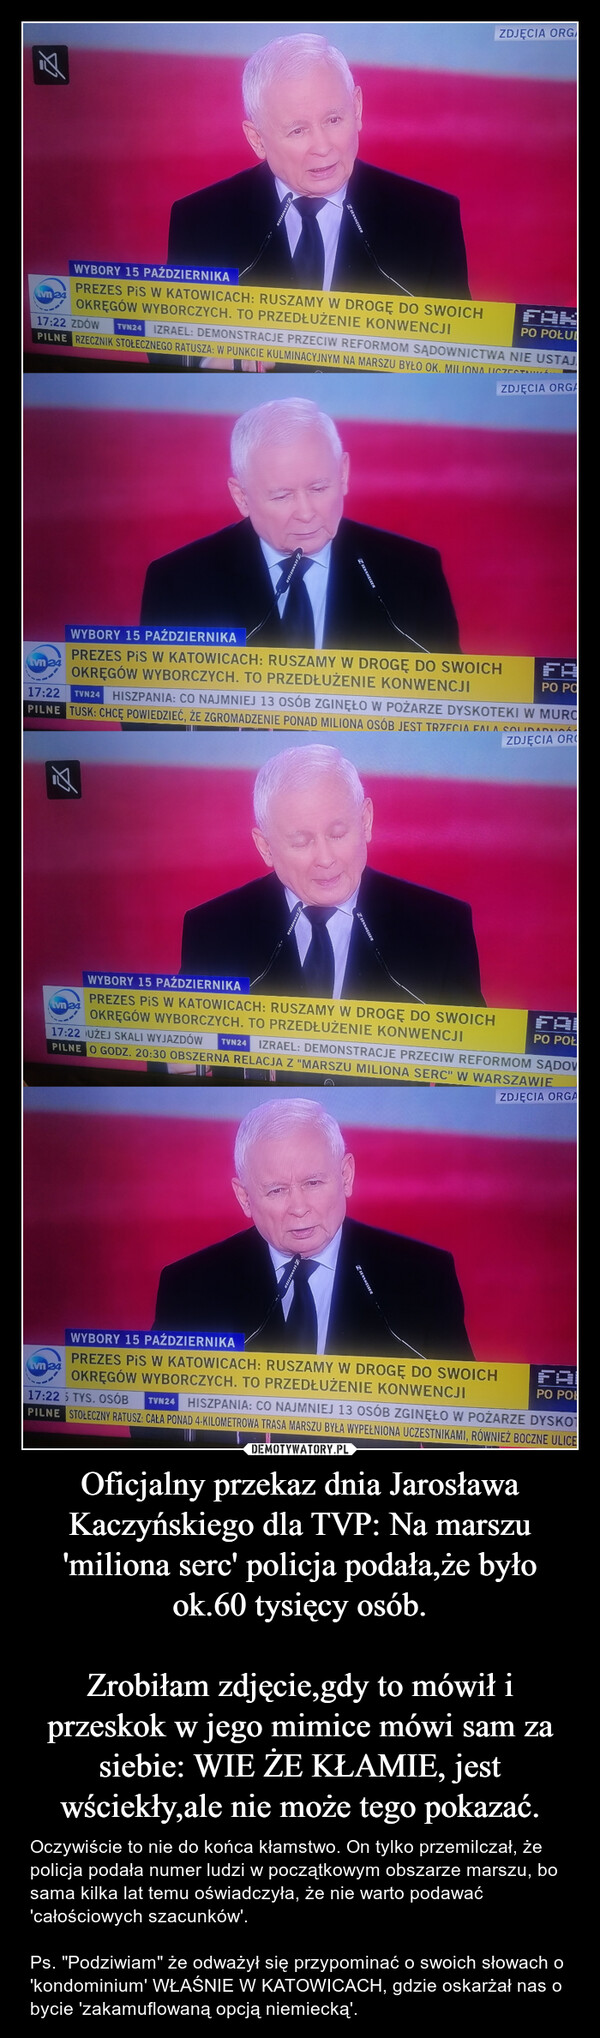 Oficjalny przekaz dnia Jarosława Kaczyńskiego dla TVP: Na marszu 'miliona serc' policja podała,że było ok.60 tysięcy osób.

Zrobiłam zdjęcie,gdy to mówił i przeskok w jego mimice mówi sam za siebie: WIE ŻE KŁAMIE, jest wściekły,ale nie może tego pokazać.